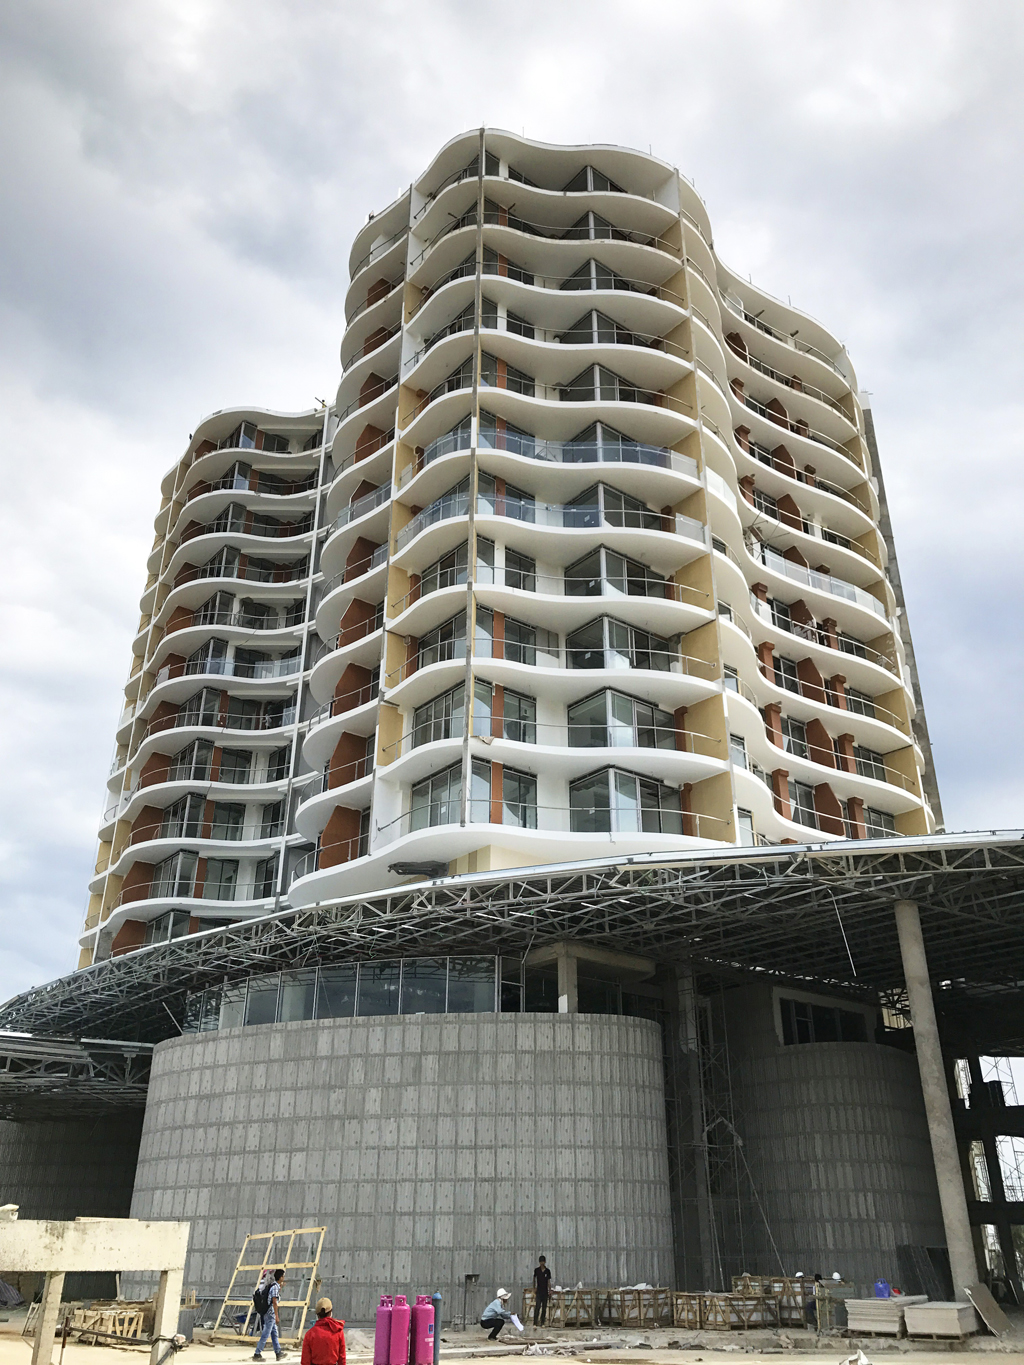 Kiến trúc hiện đại, độc đáo từng chi tiết của InterContinental Phu Quoc Long Beach Resort & Residences, thuyết phục nhiều khách hàng